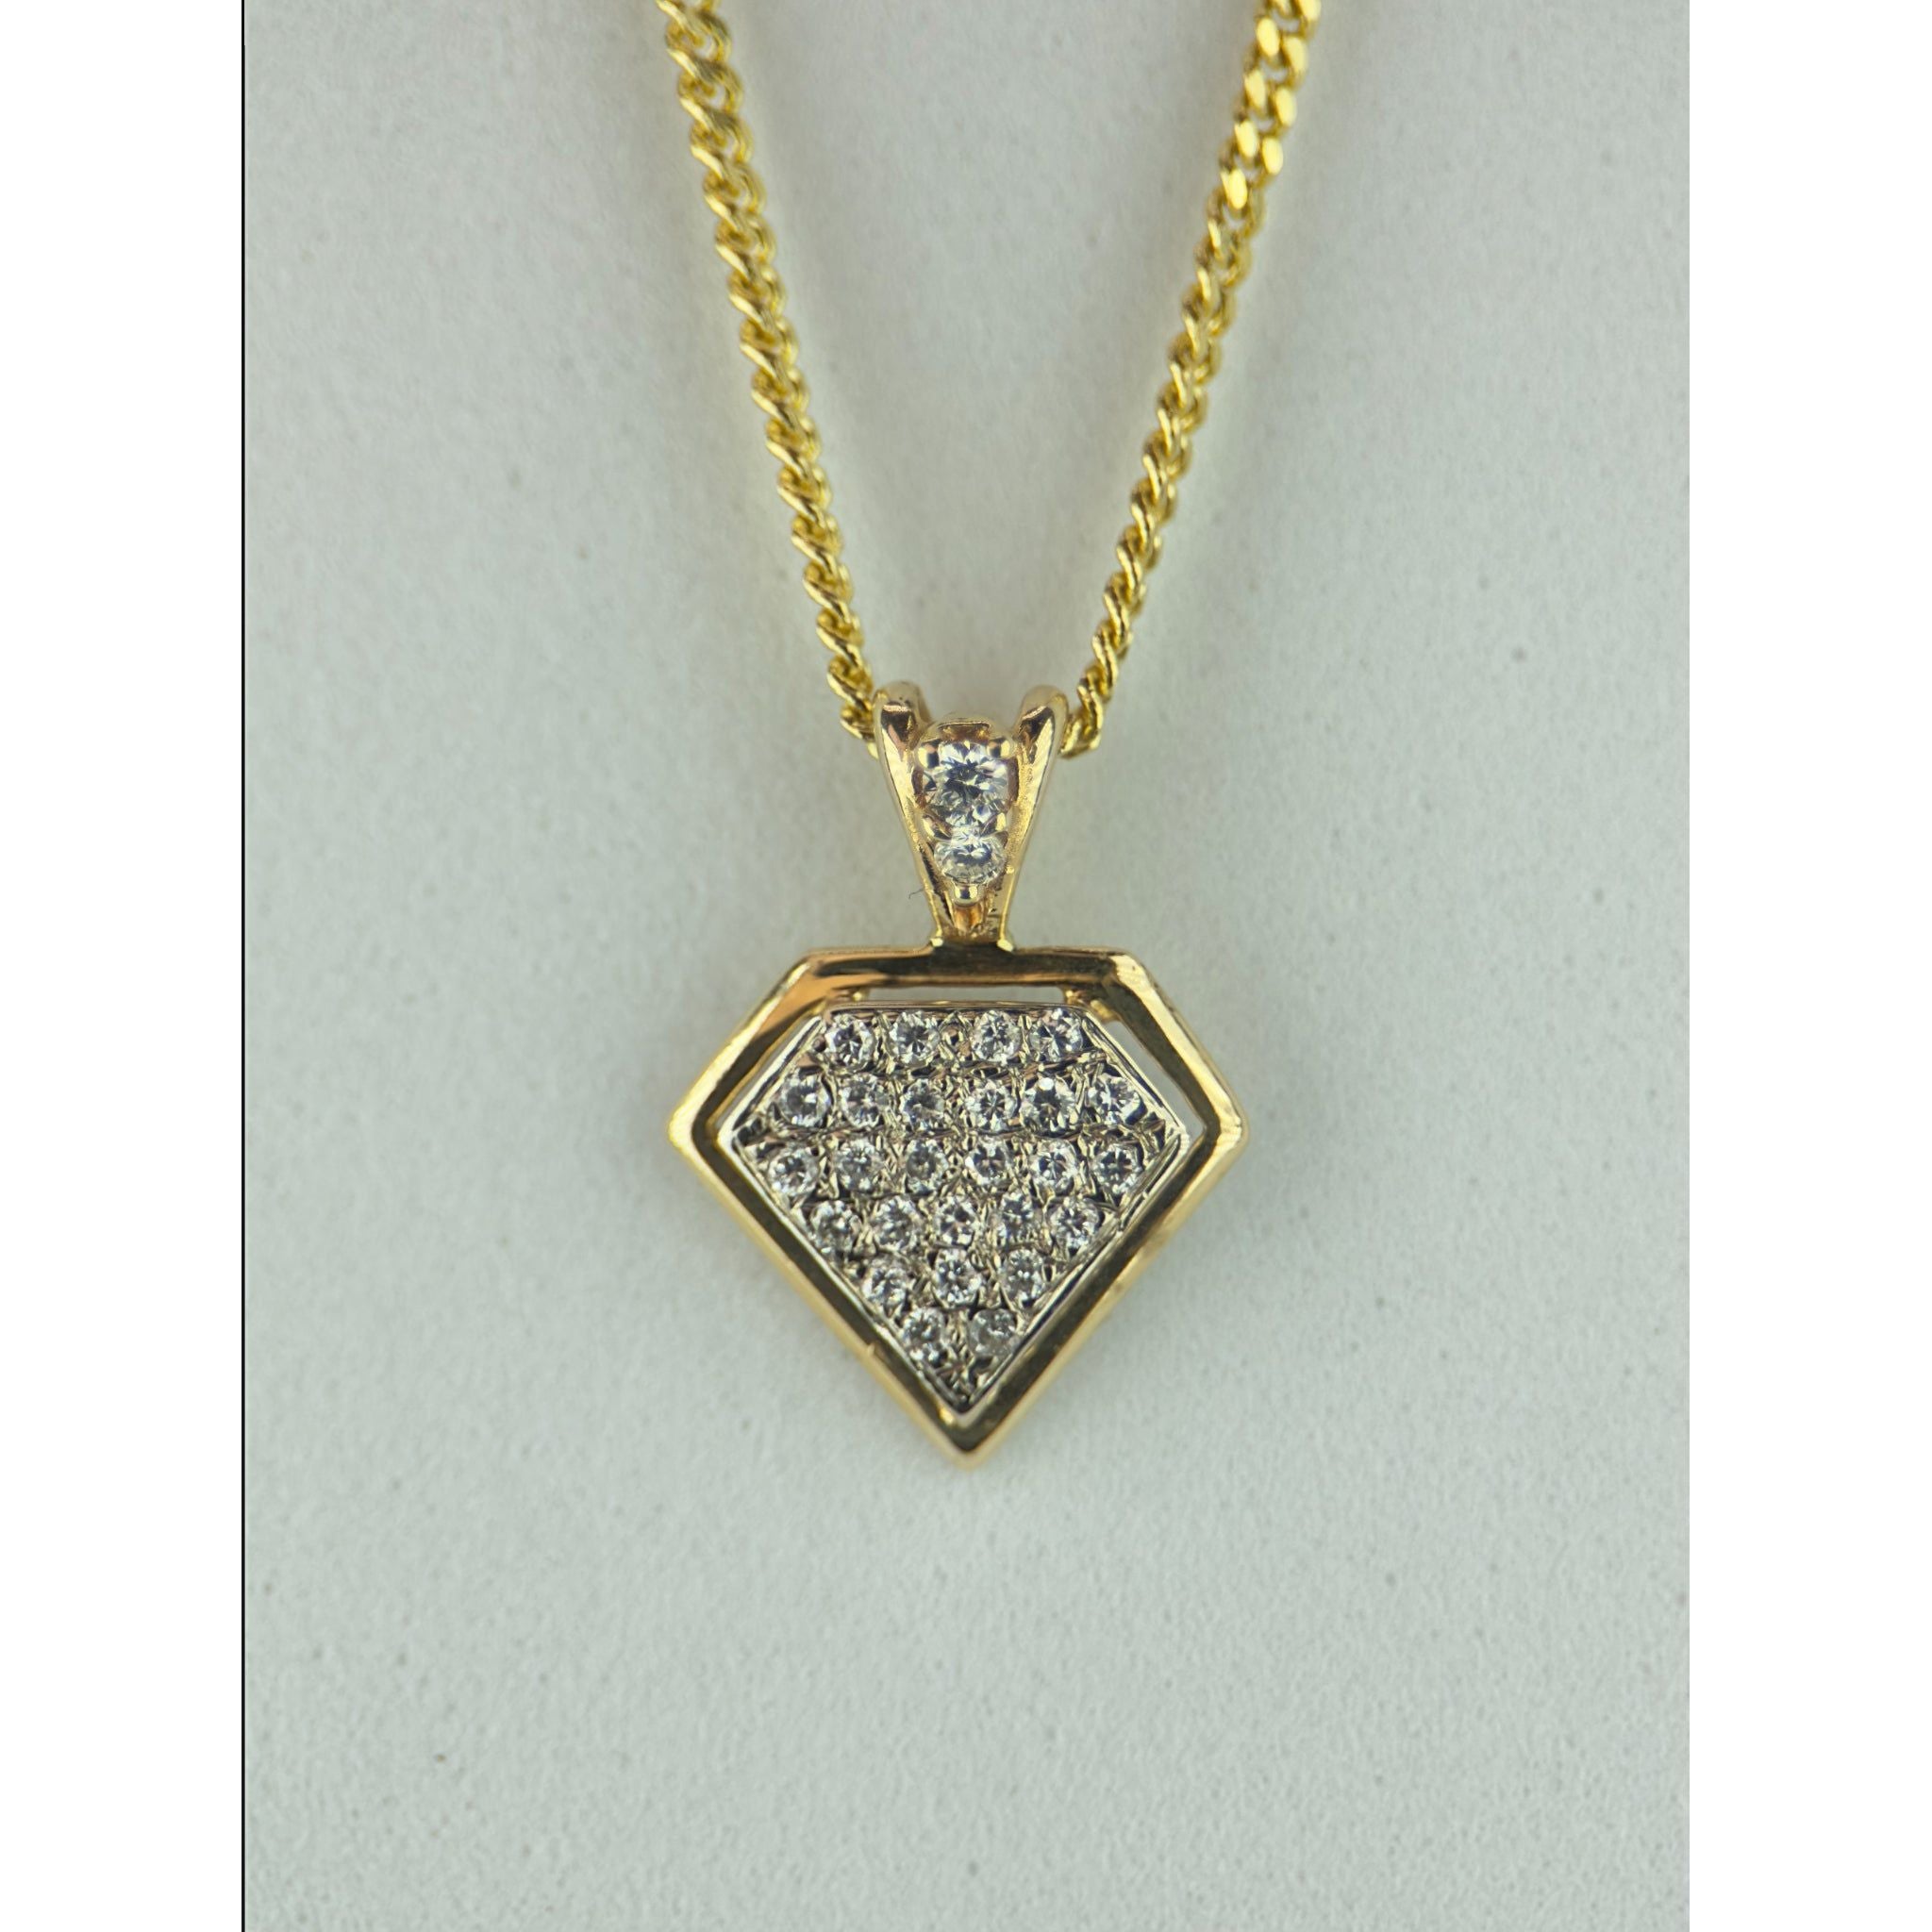 DR2215 - Oro amarillo de 14 quilates - Diamante - Colgante y cadena